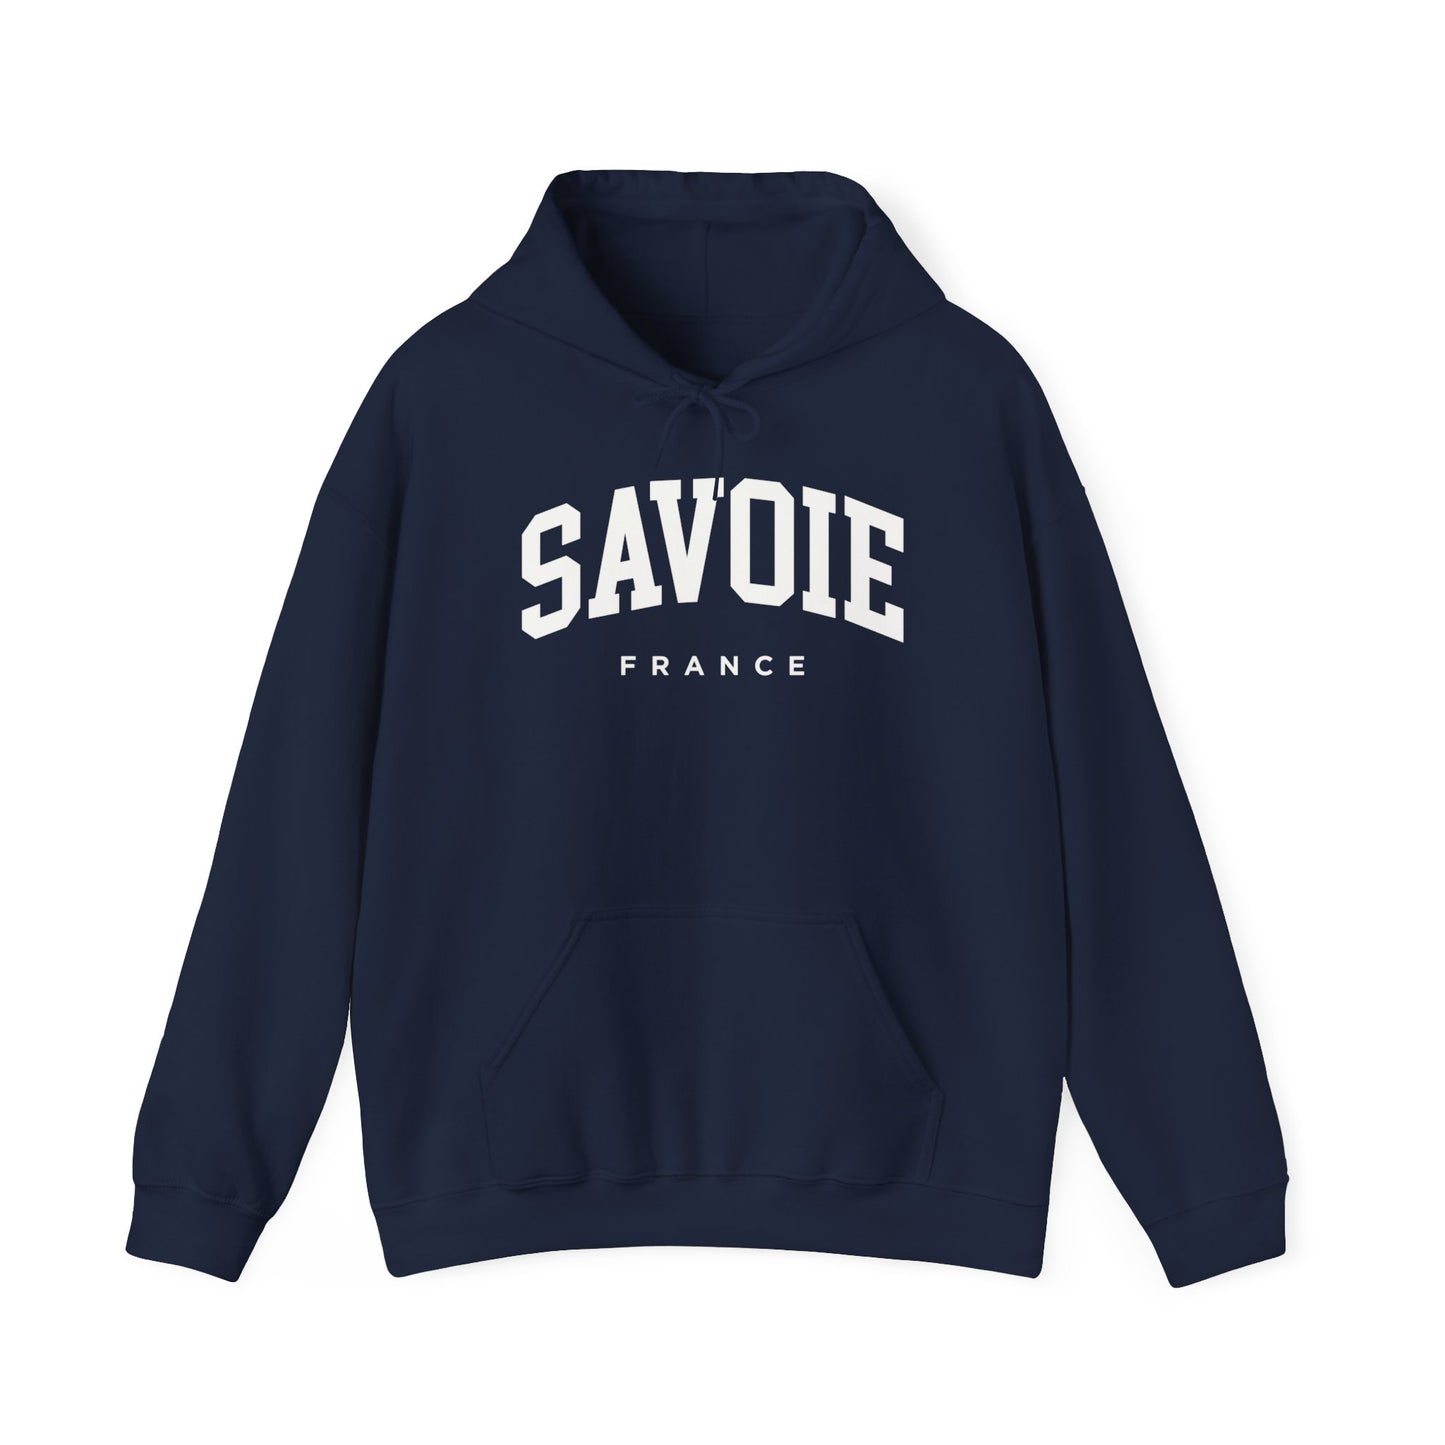 Savoy France Hoodie